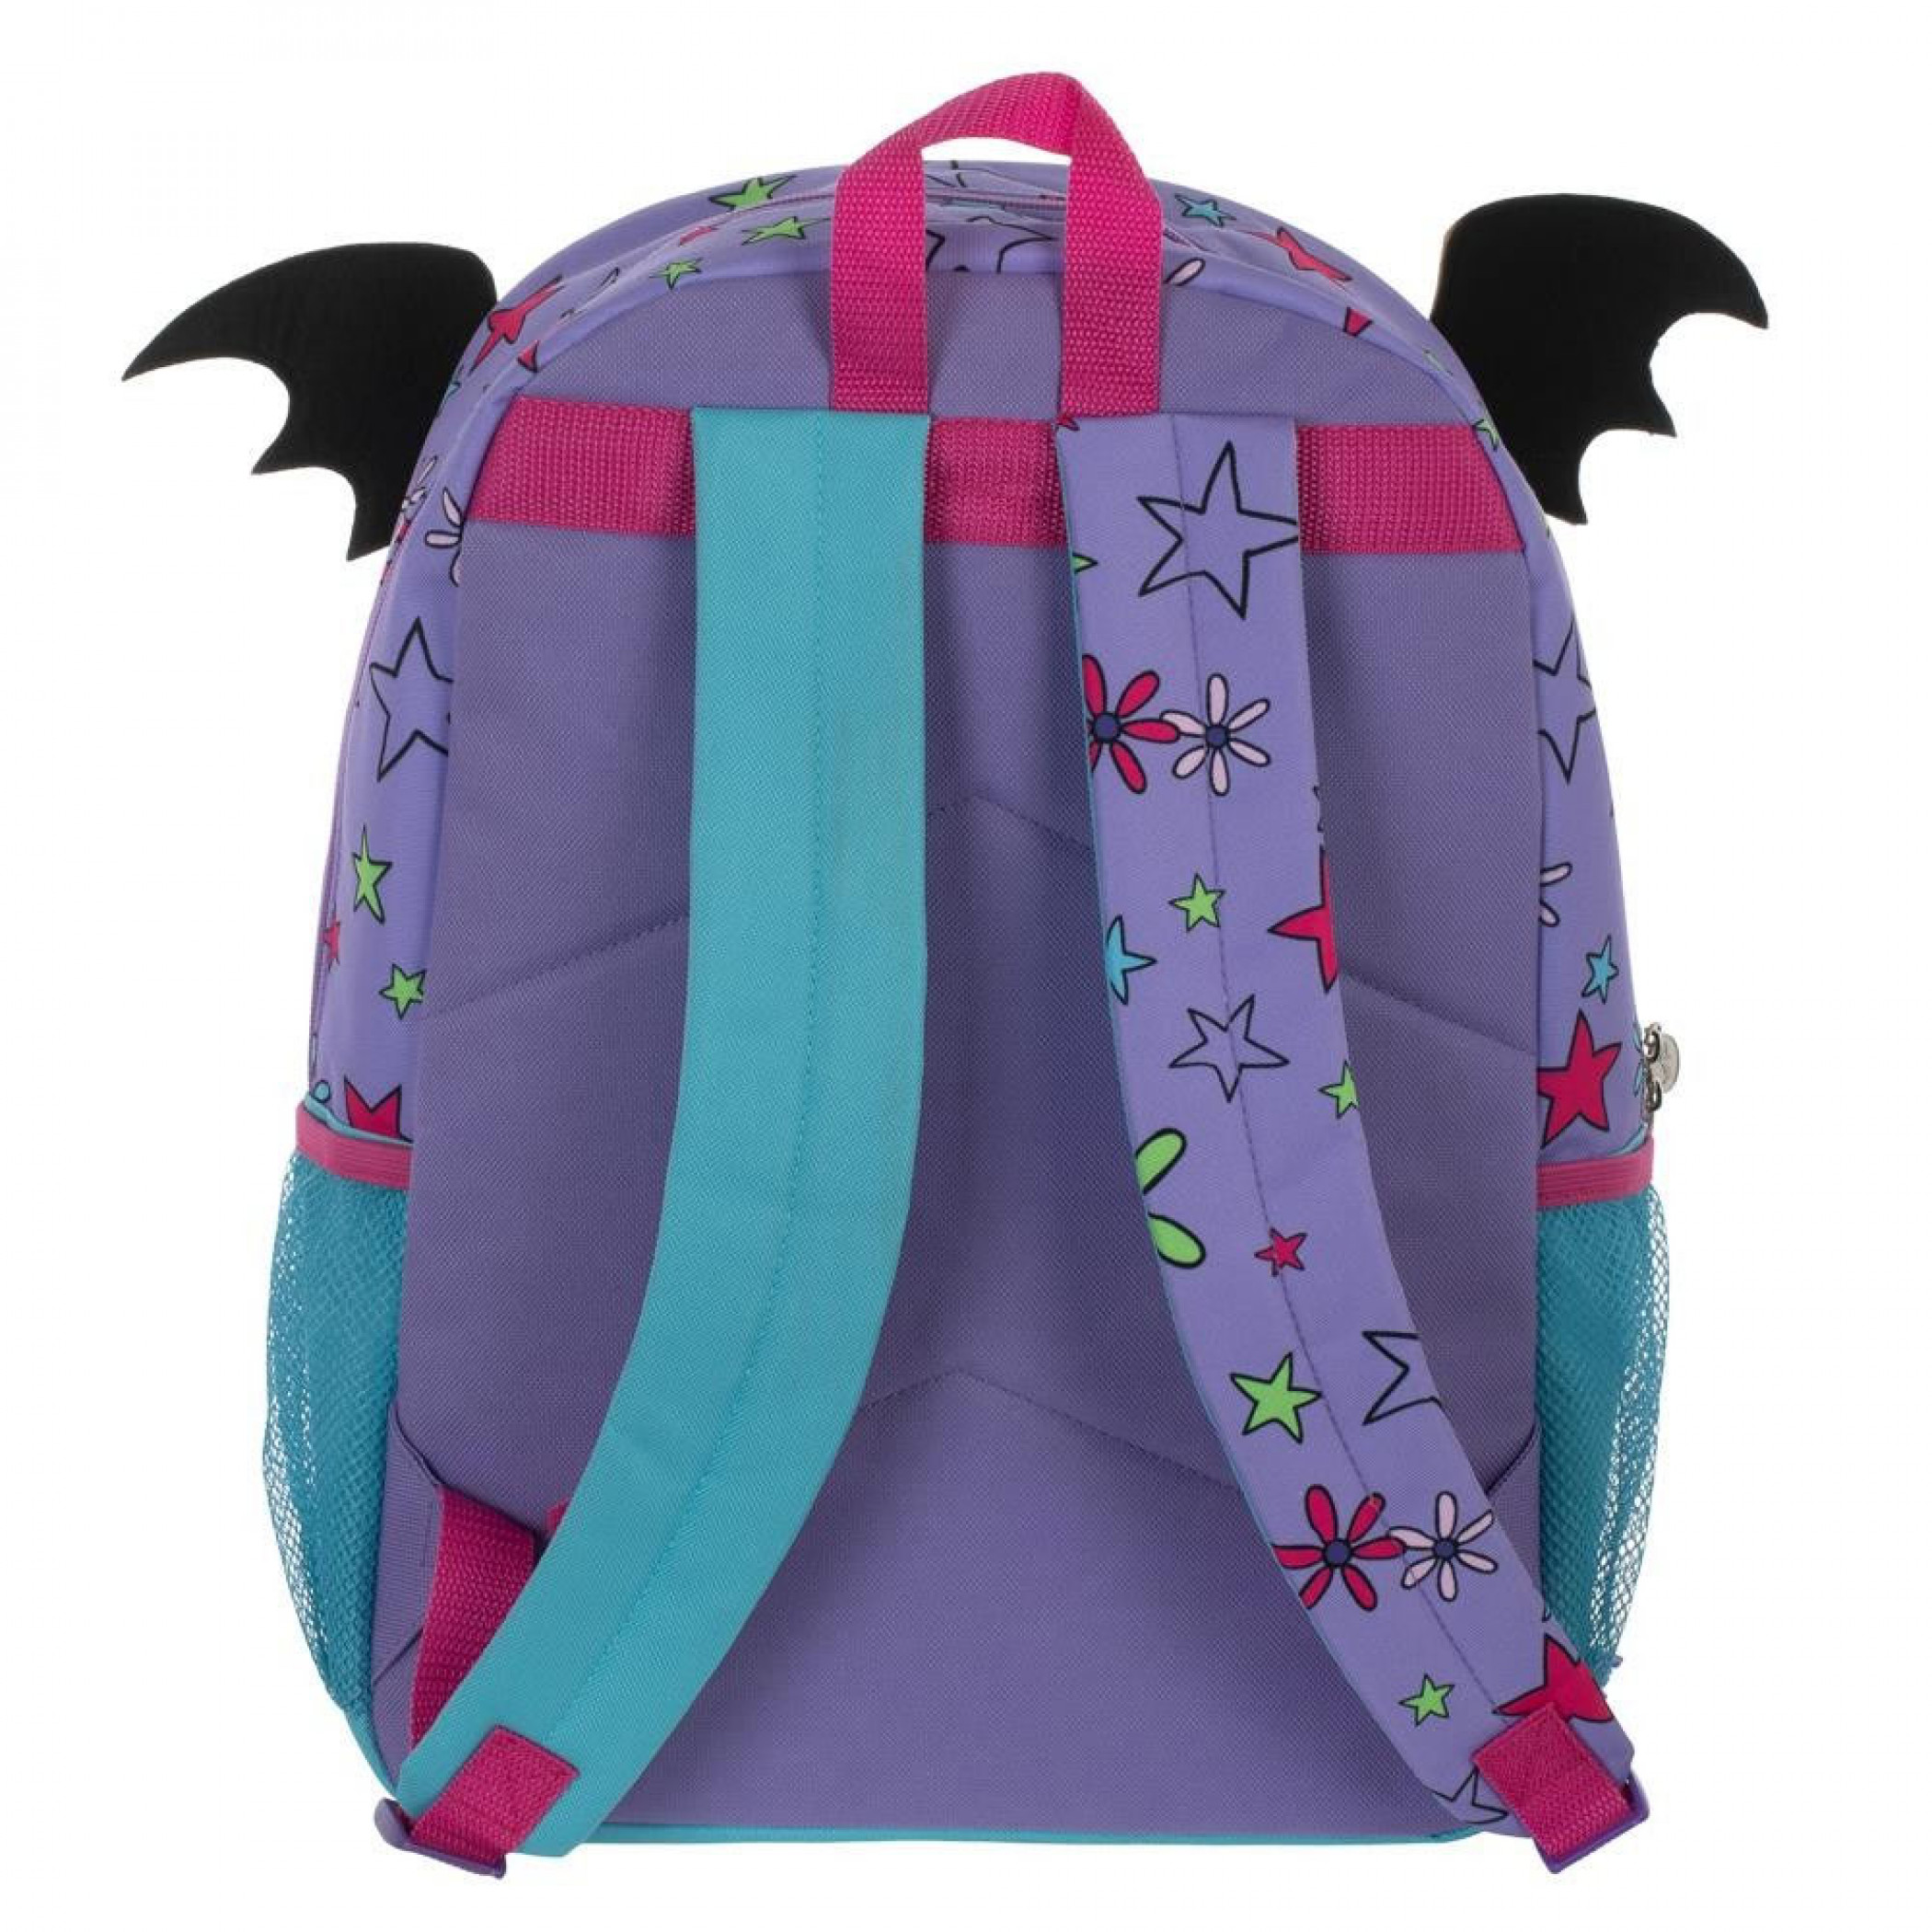 Vampirina 5-Piece Bag And Backpack Set